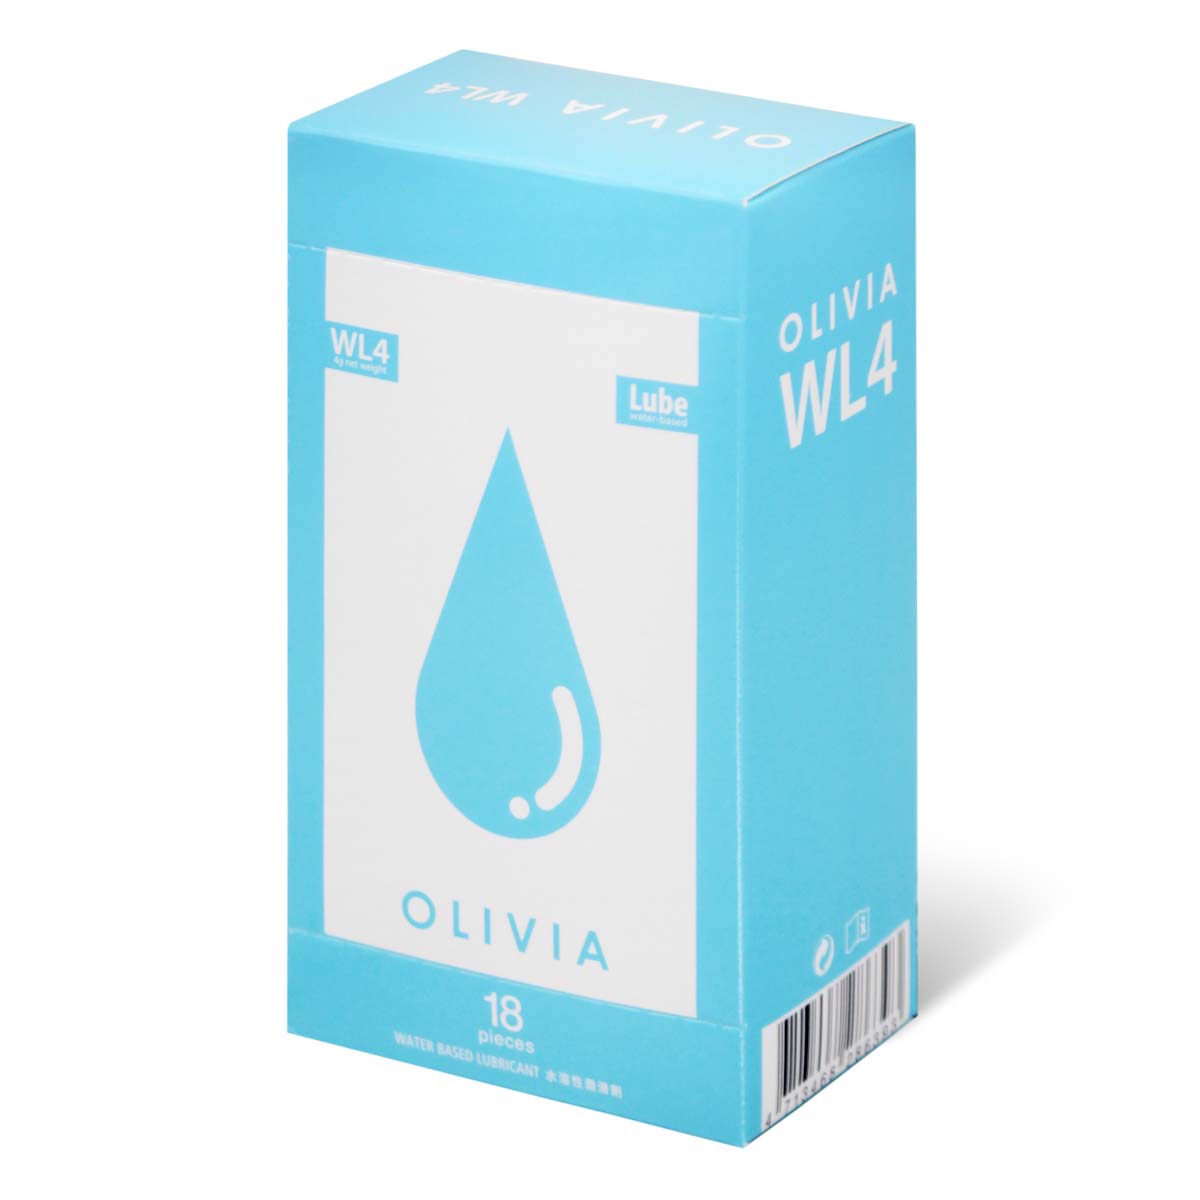 奥莉维亚 基本 WL4 旅行小包装 18 片装 水基润滑剂 (短效期)-p_1